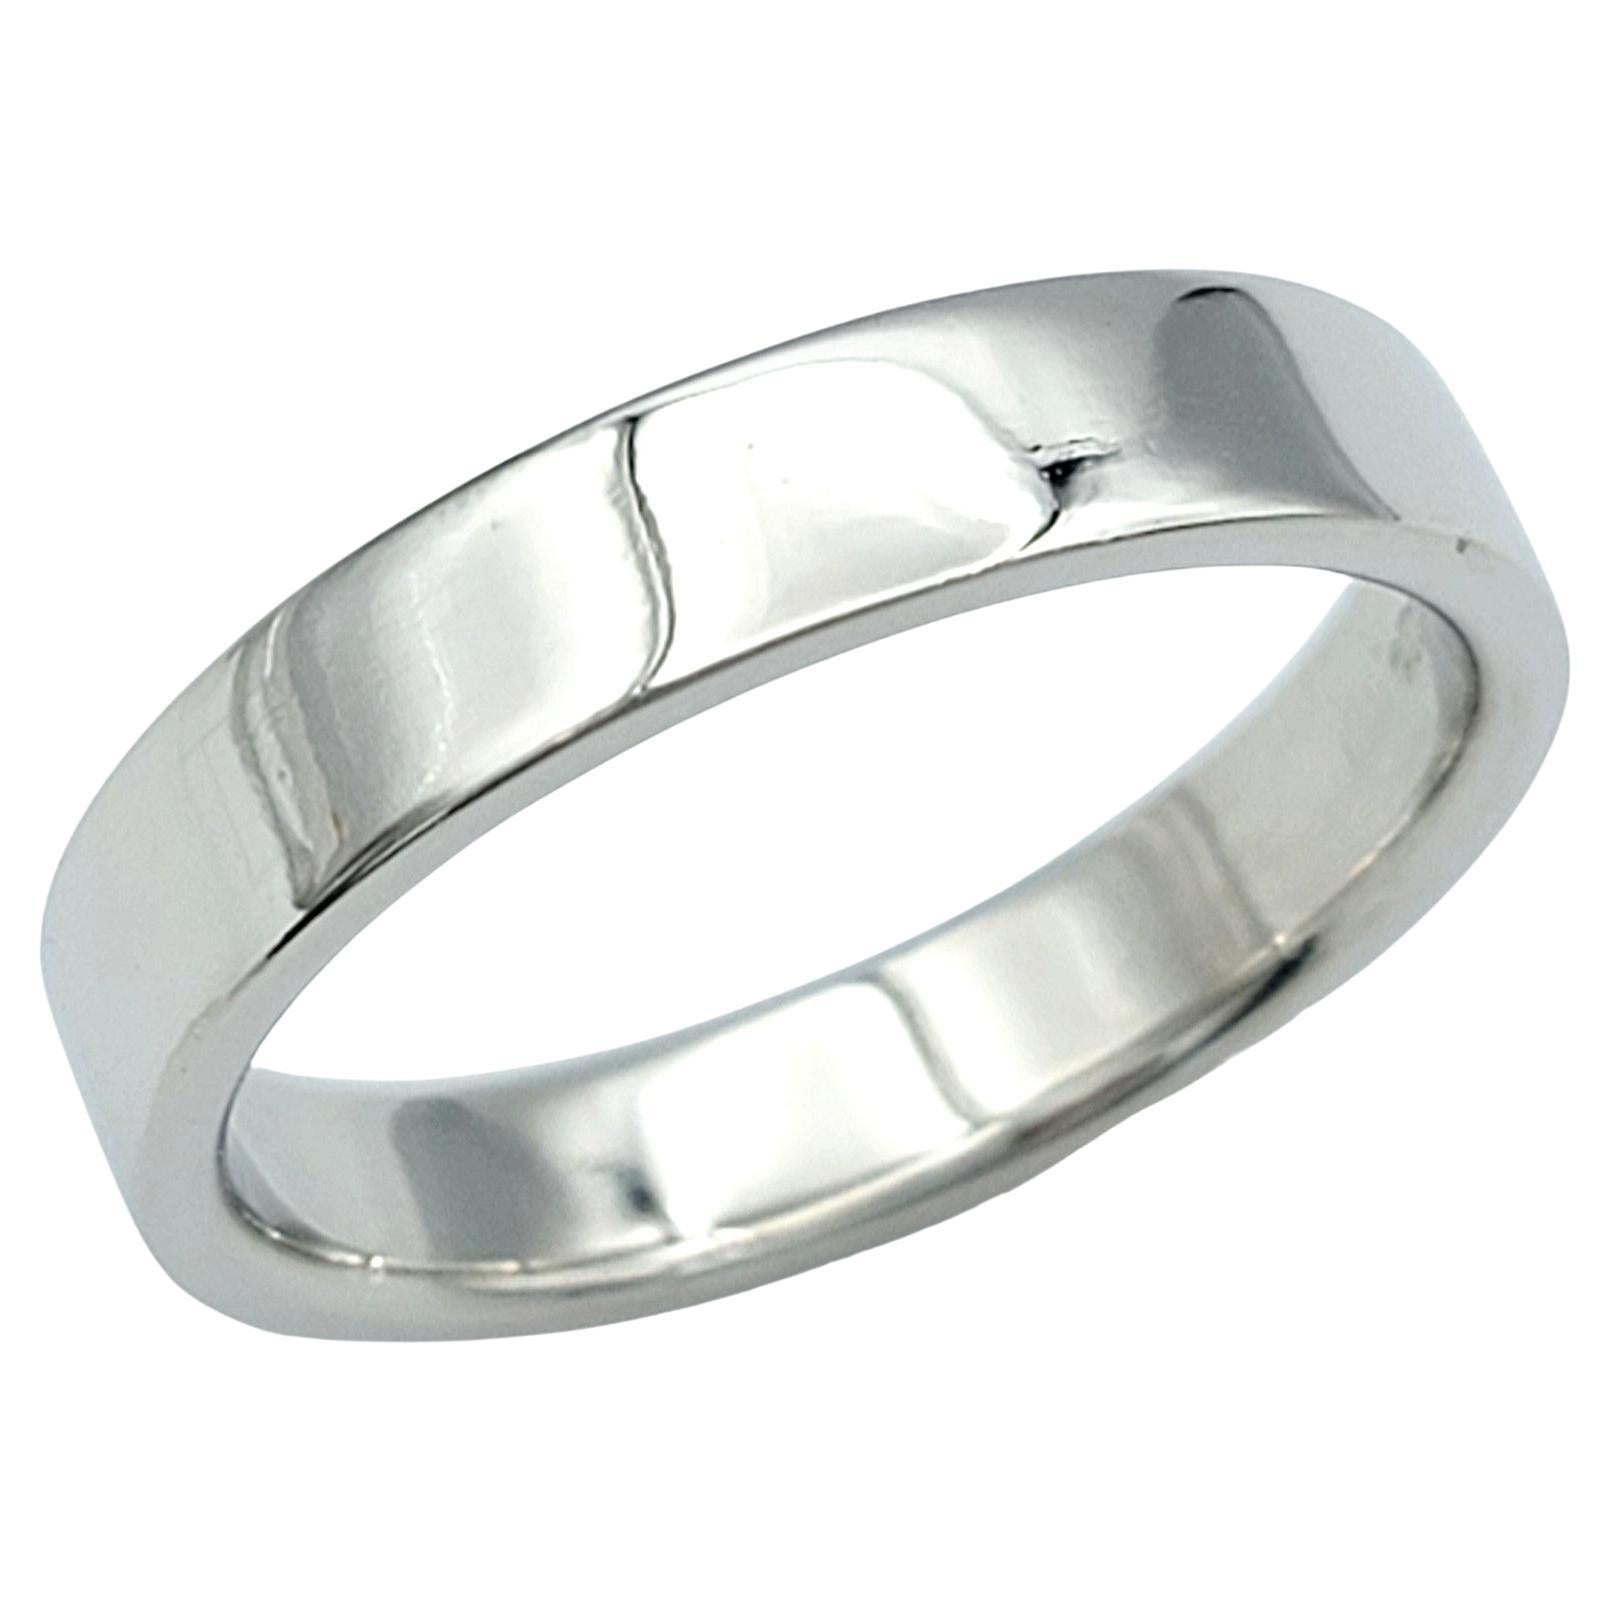 Tiffany & Co. Unisex Wedding Band Ring Set in Polished Platinum